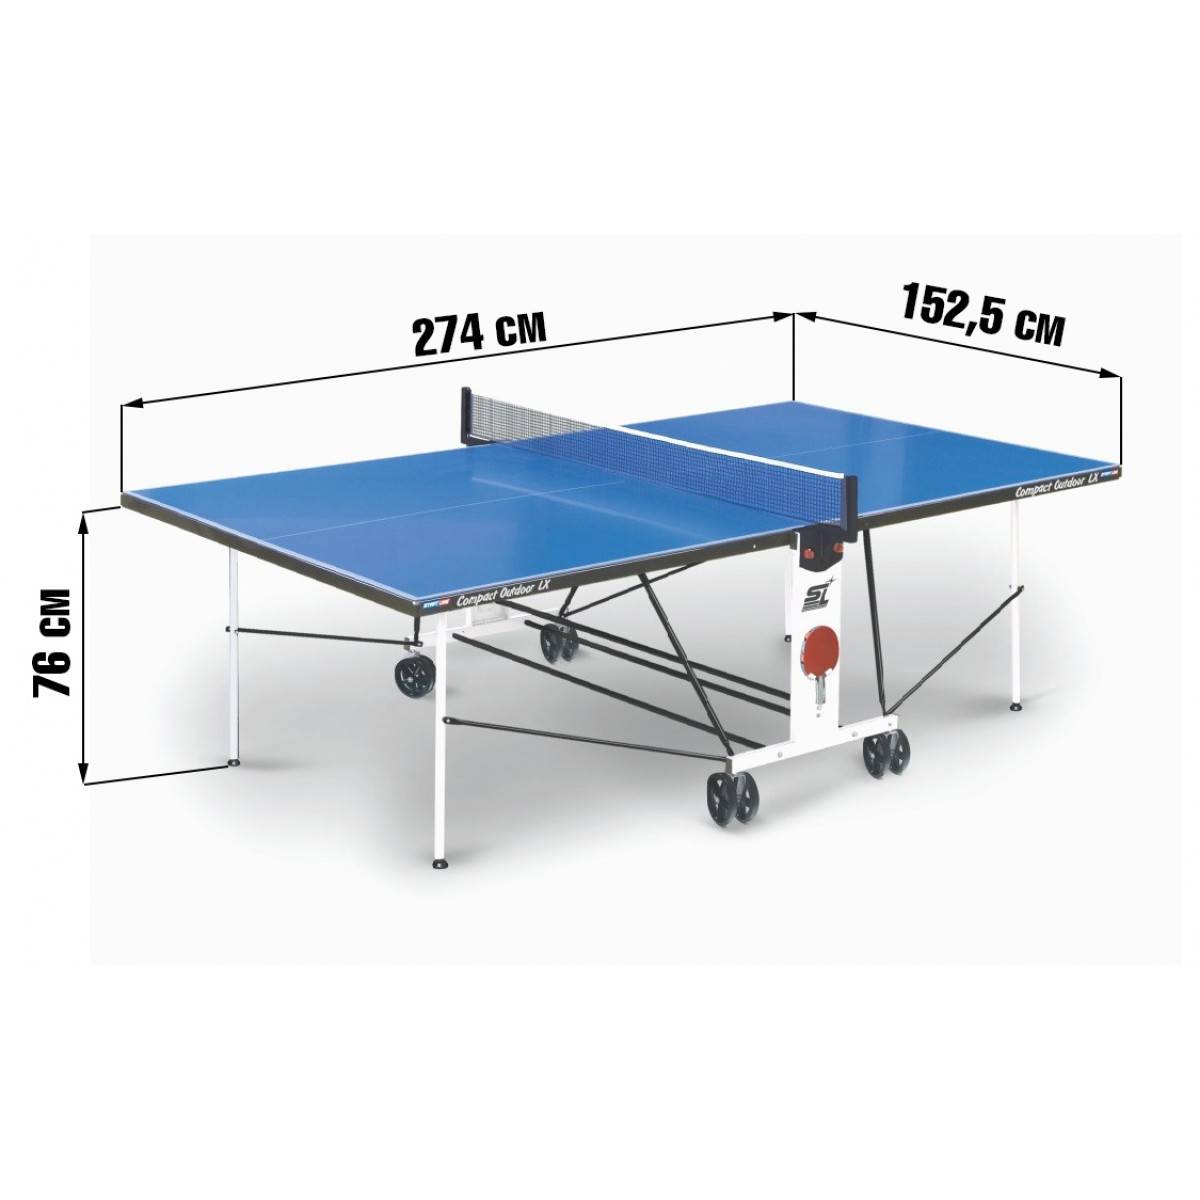 Теннисный стол своими руками - размеры, чертежи, инструкция с фото и видео